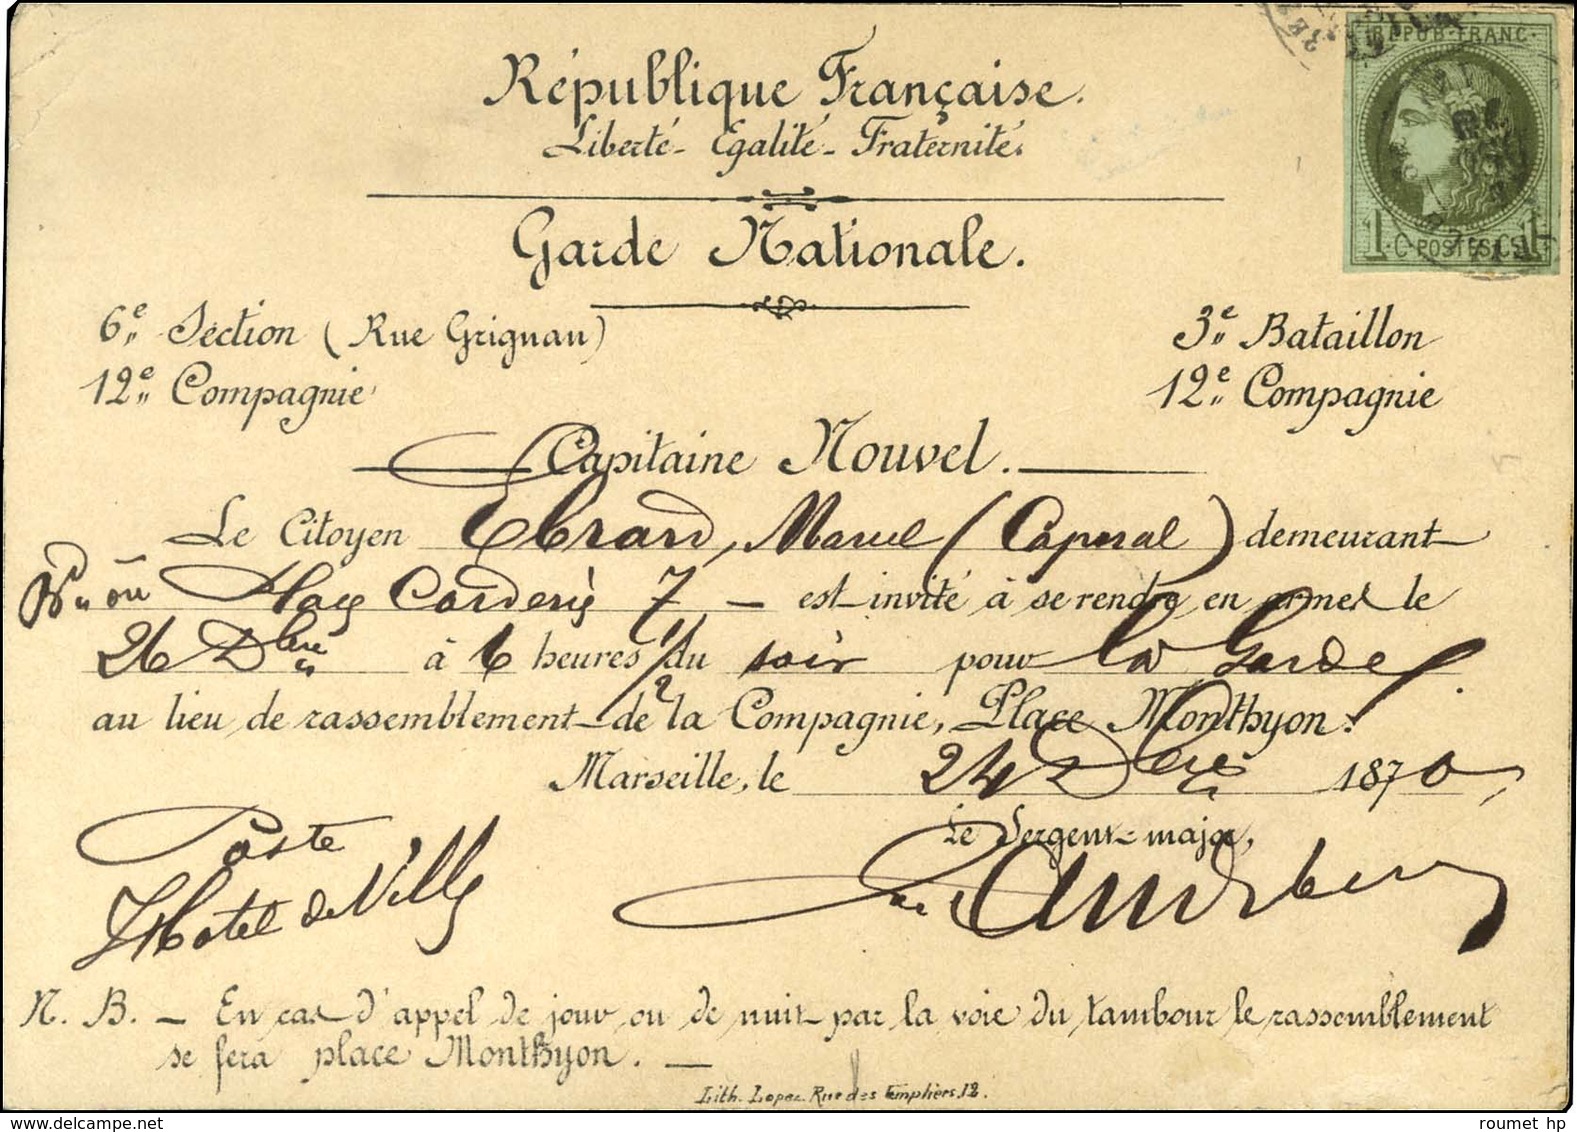 Càd T 17 MARSEILLE (12) 24 DEC. 70 / N° 39 Sur Carte Imprimée De La Garde Nationale. - TB / SUP. - RR. - 1870 Uitgave Van Bordeaux